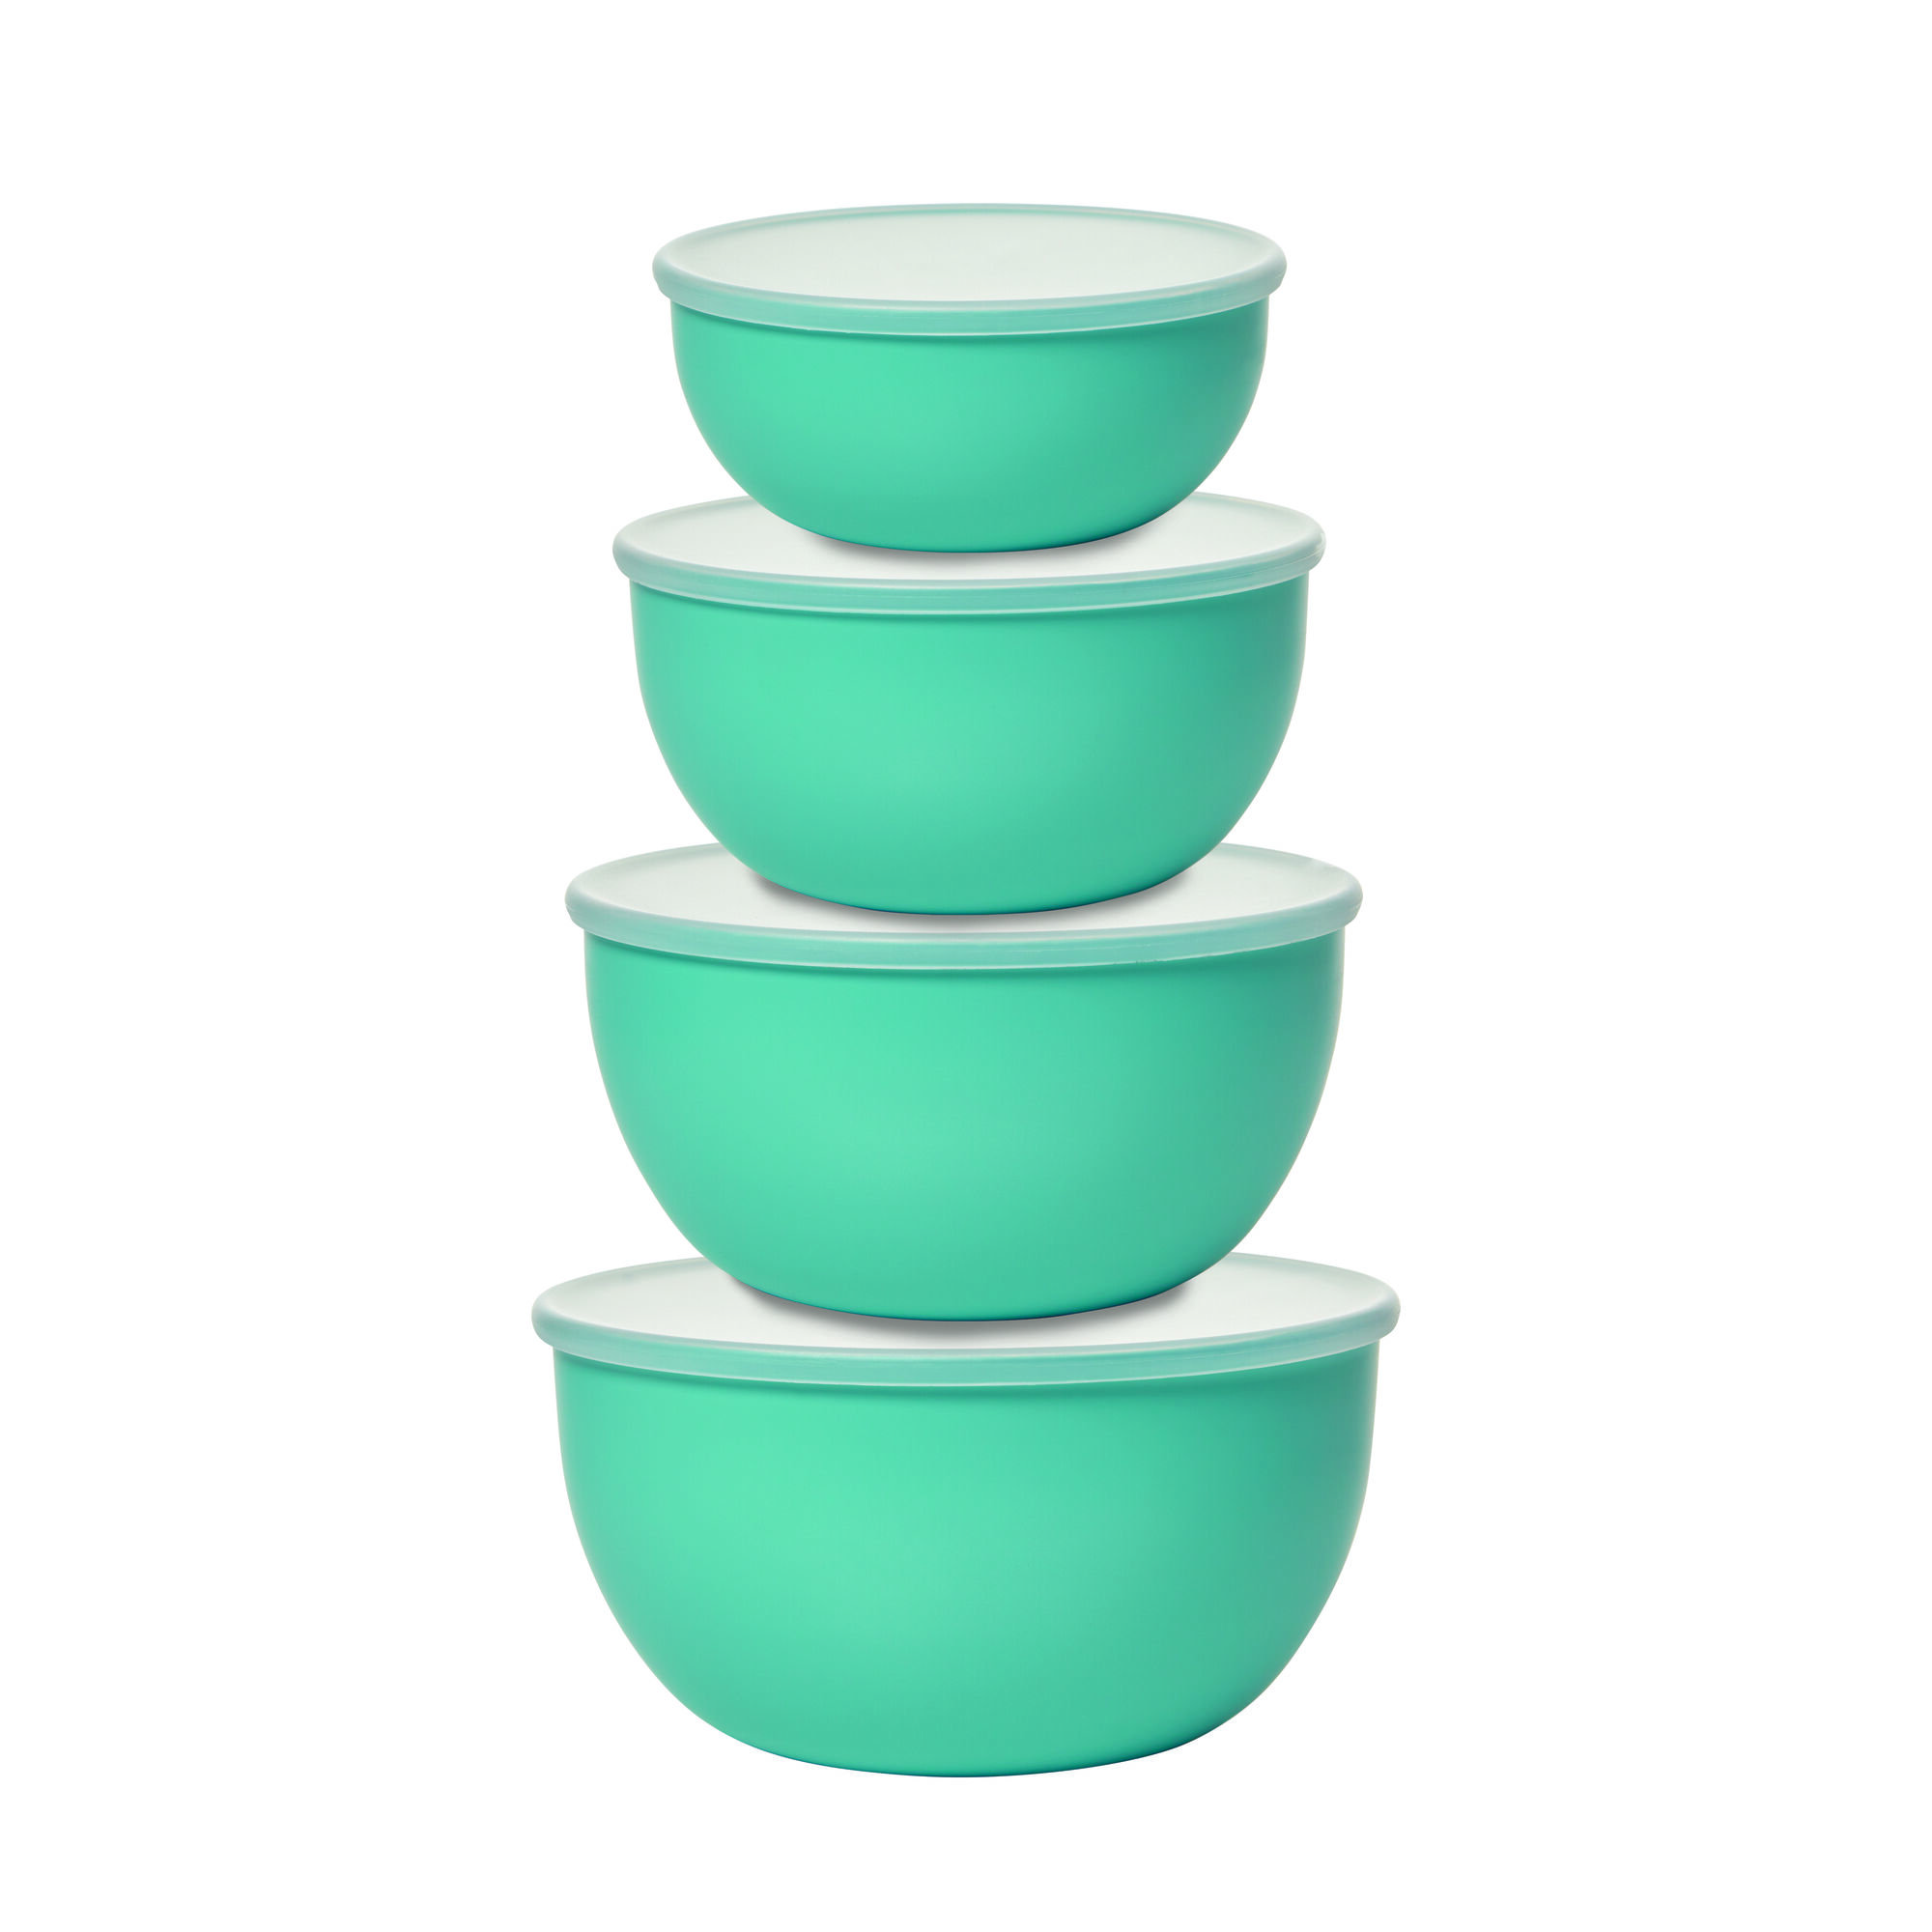  KitchenAid Classic Mixing Bowls, Set of 5, Aqua Sky 2